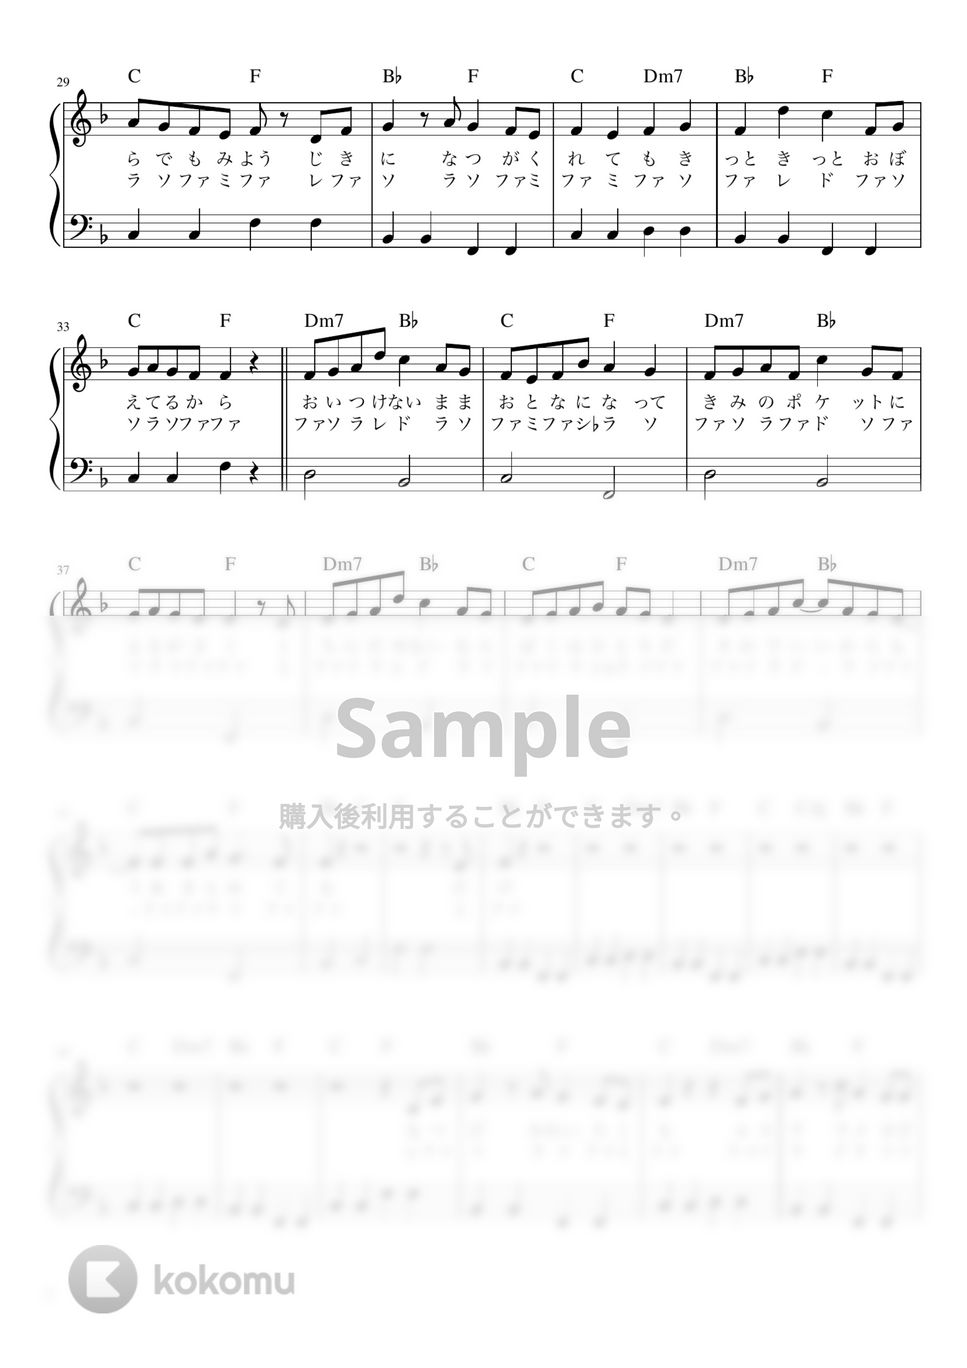 ヨルシカ - ただ君に晴れ (かんたん 歌詞付き ドレミ付き 初心者) by piano.tokyo